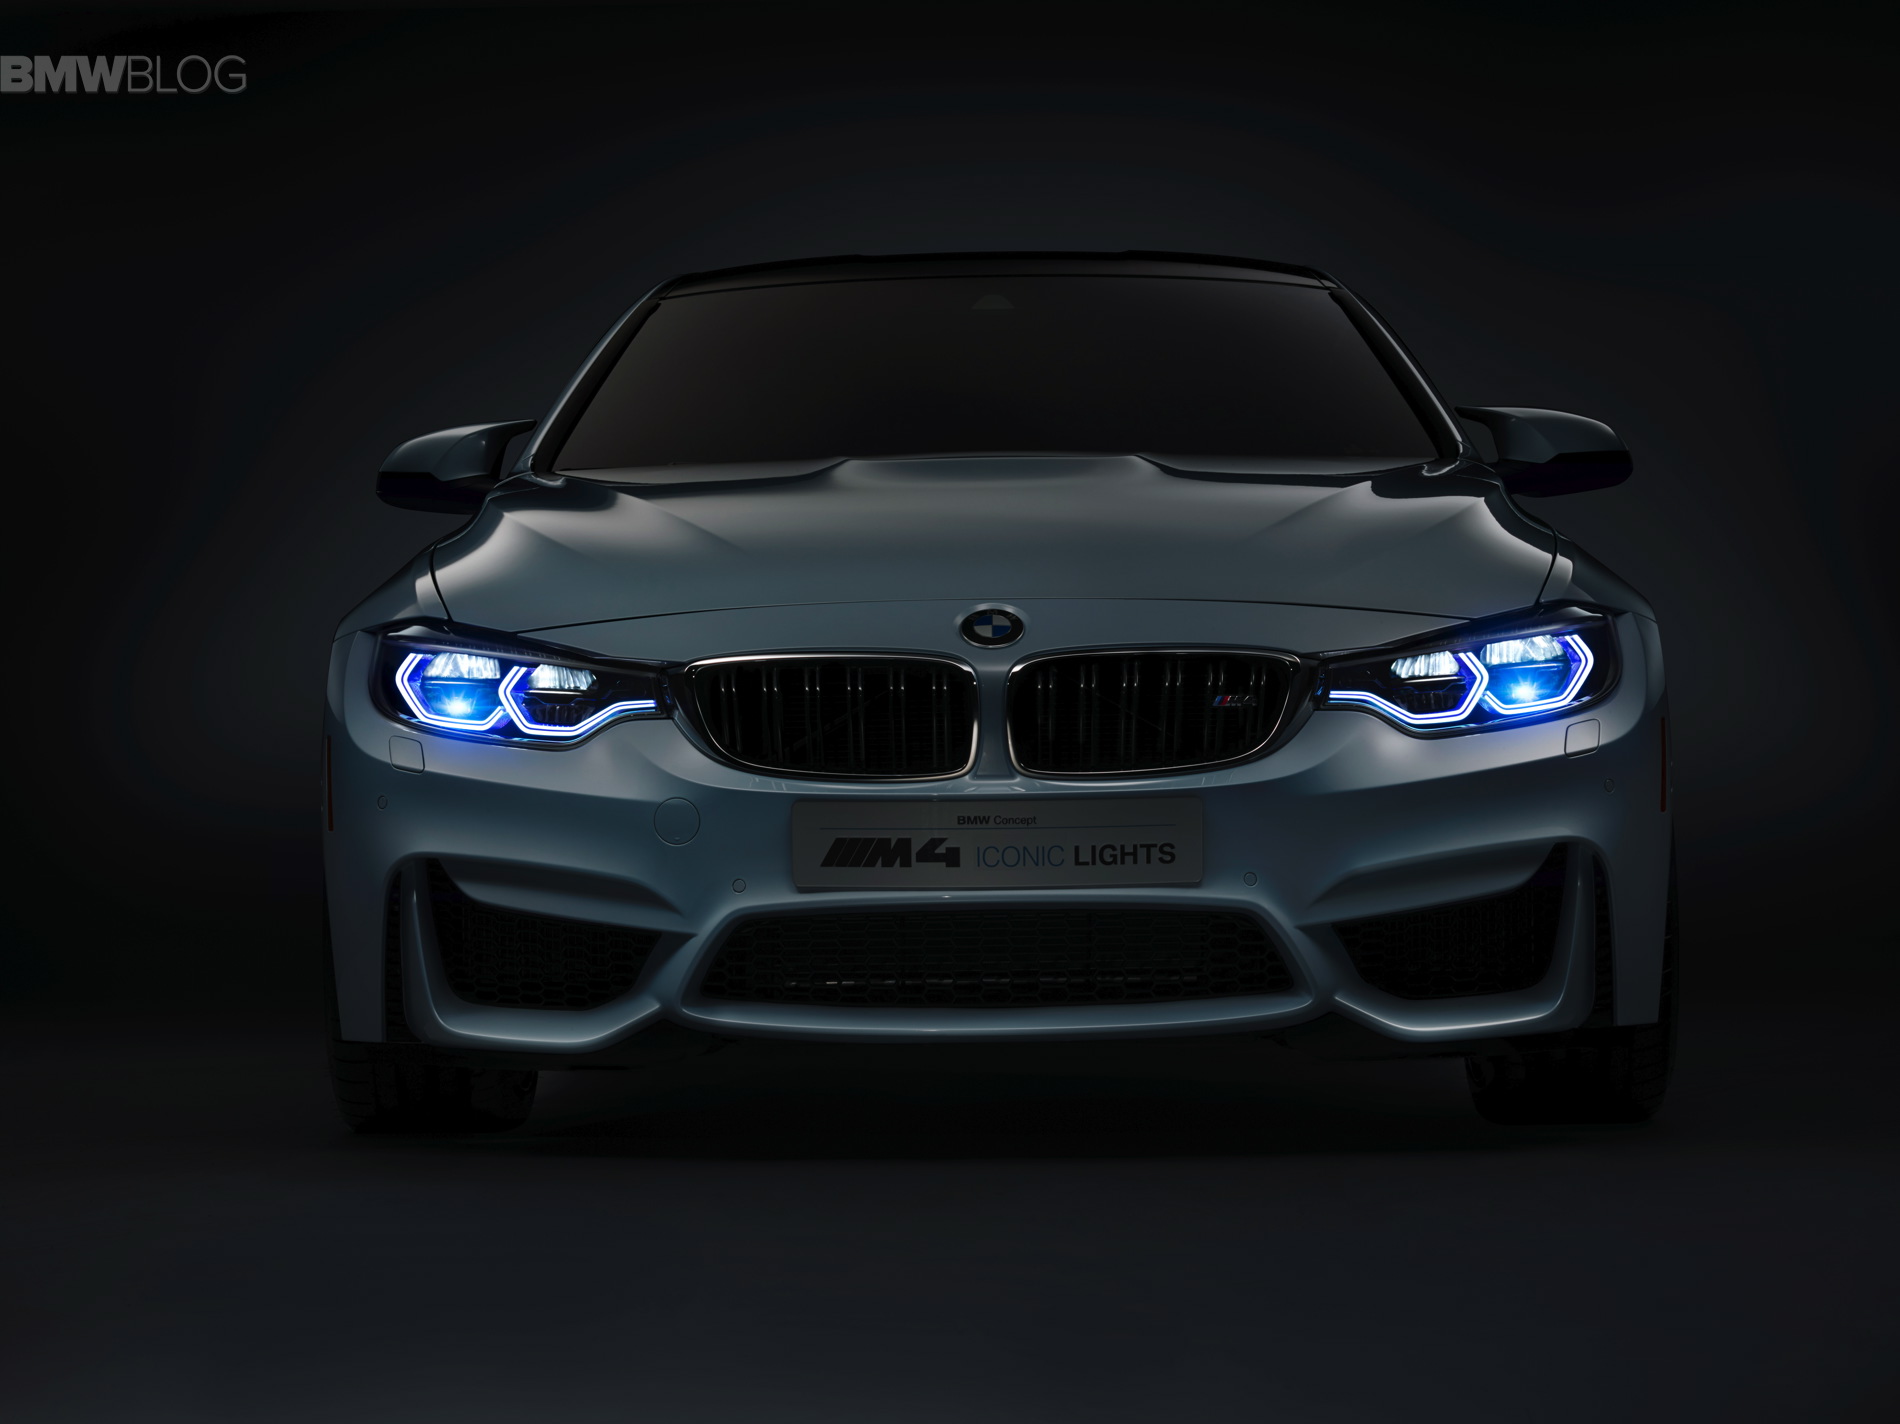 BMW M4 Concept Backgrounds, Compatible - PC, Mobile, Gadgets| 1900x1424 px